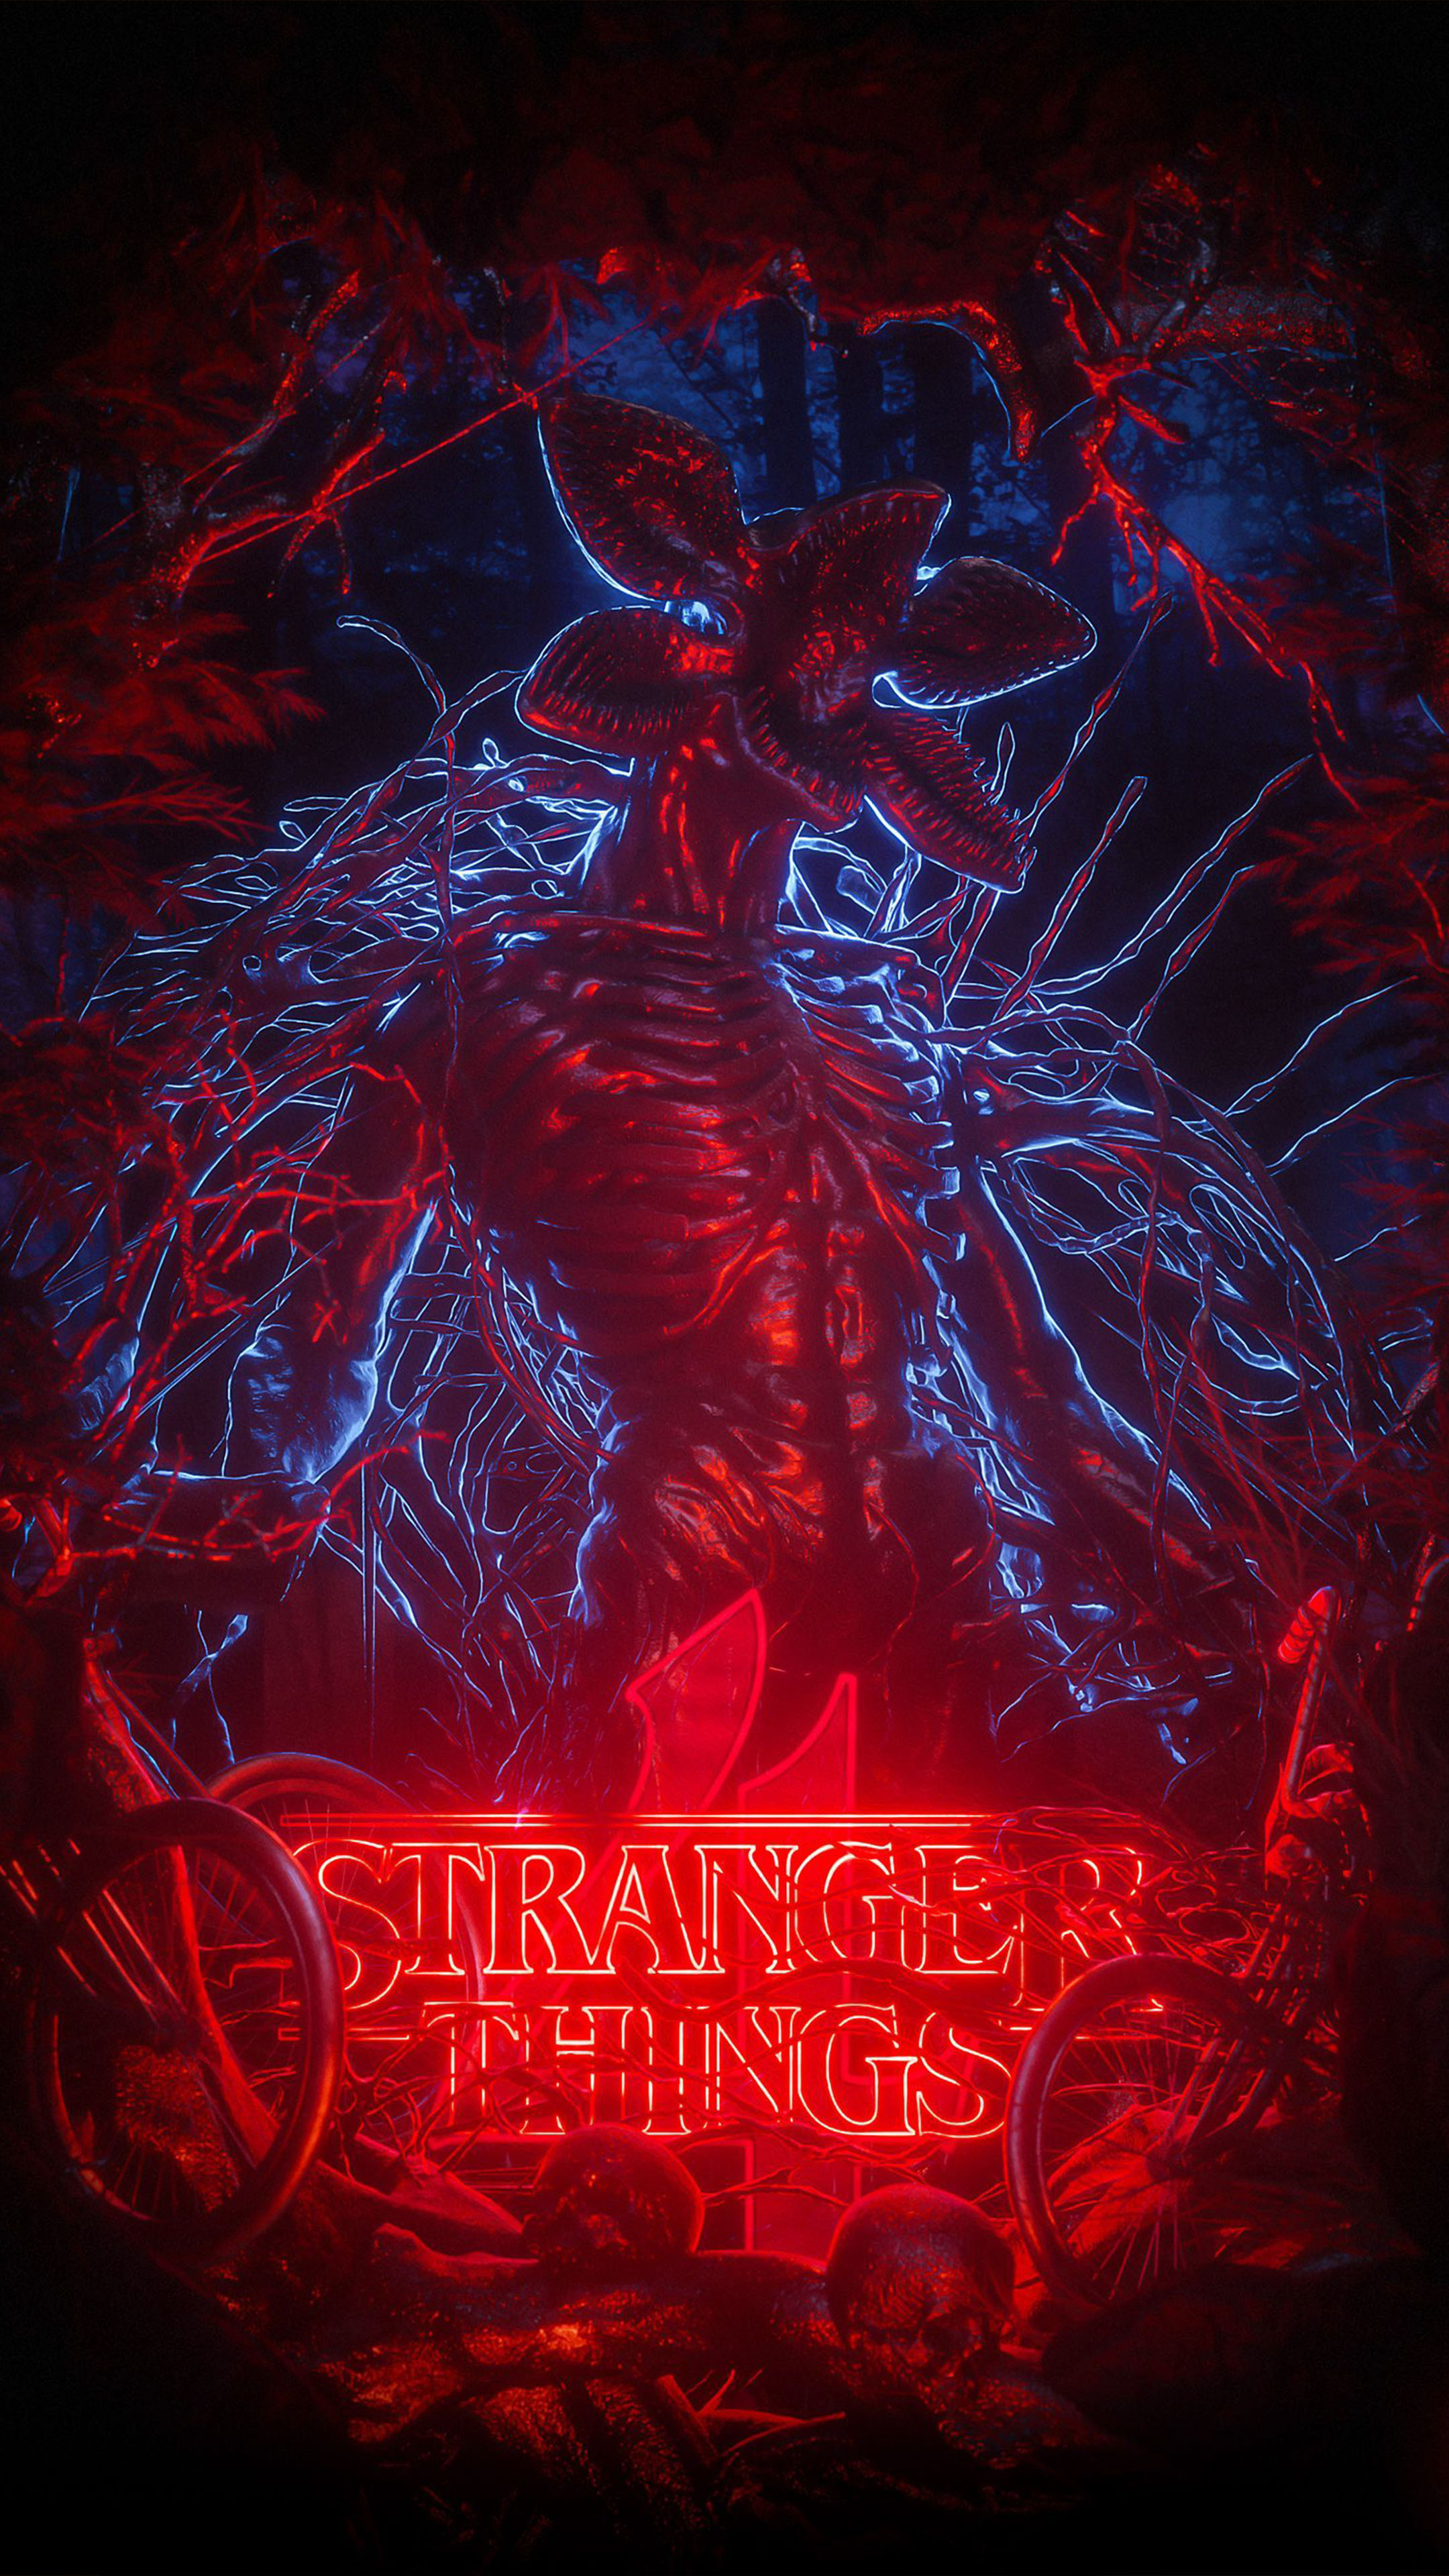 Stranger Things Season 4 wallpapers for desktop download free Stranger  Things Season 4 pictures and backgrounds for PC  moborg